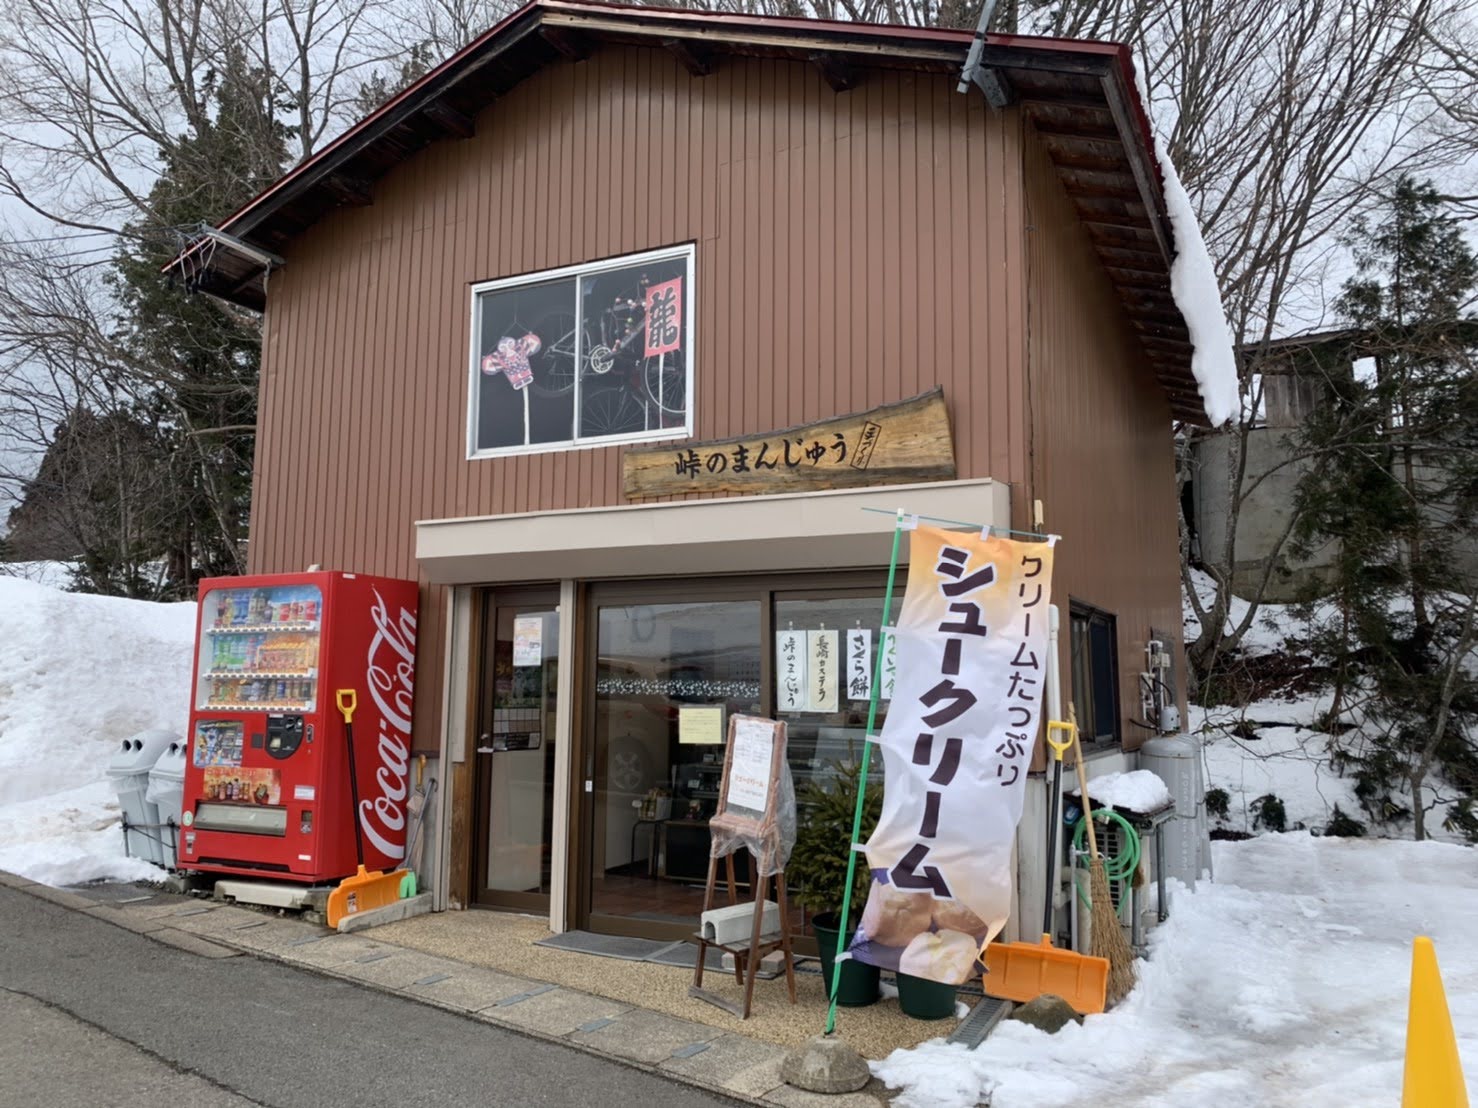 Toge-no-Manju Sweets shop